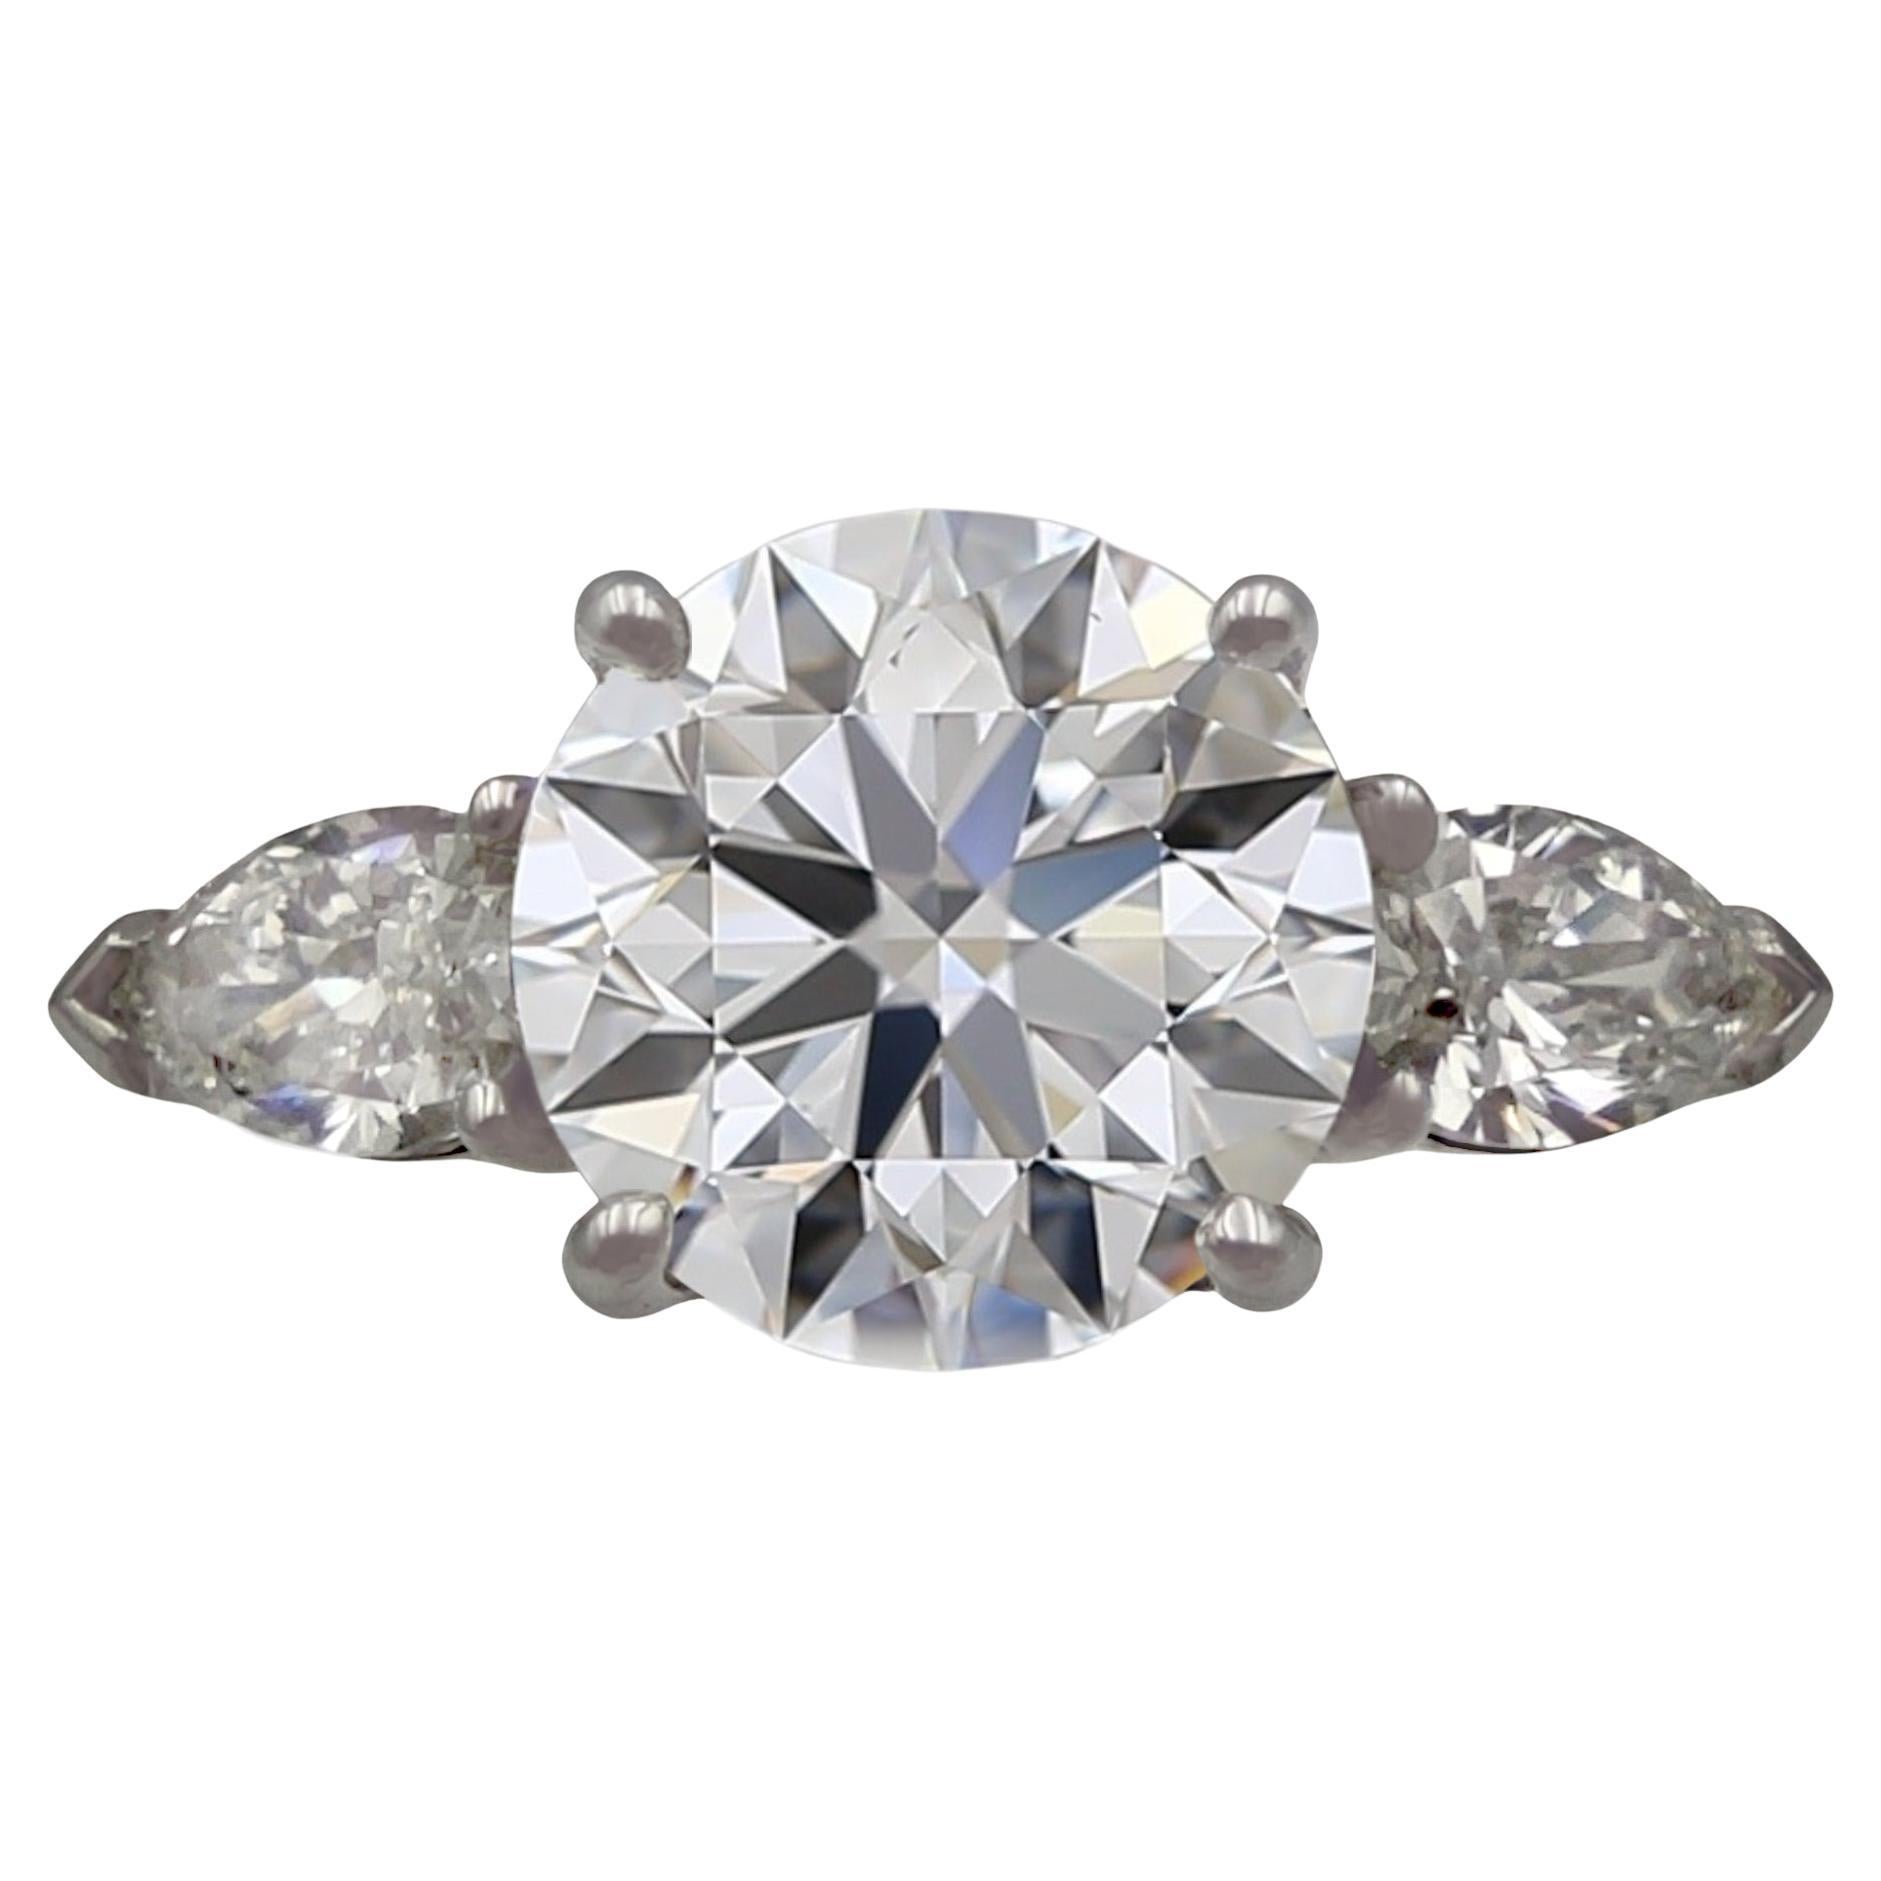 5.11 Carat Radiant Cut Diamond Engagement Ring GIA H VS1 in 18 Karat ...